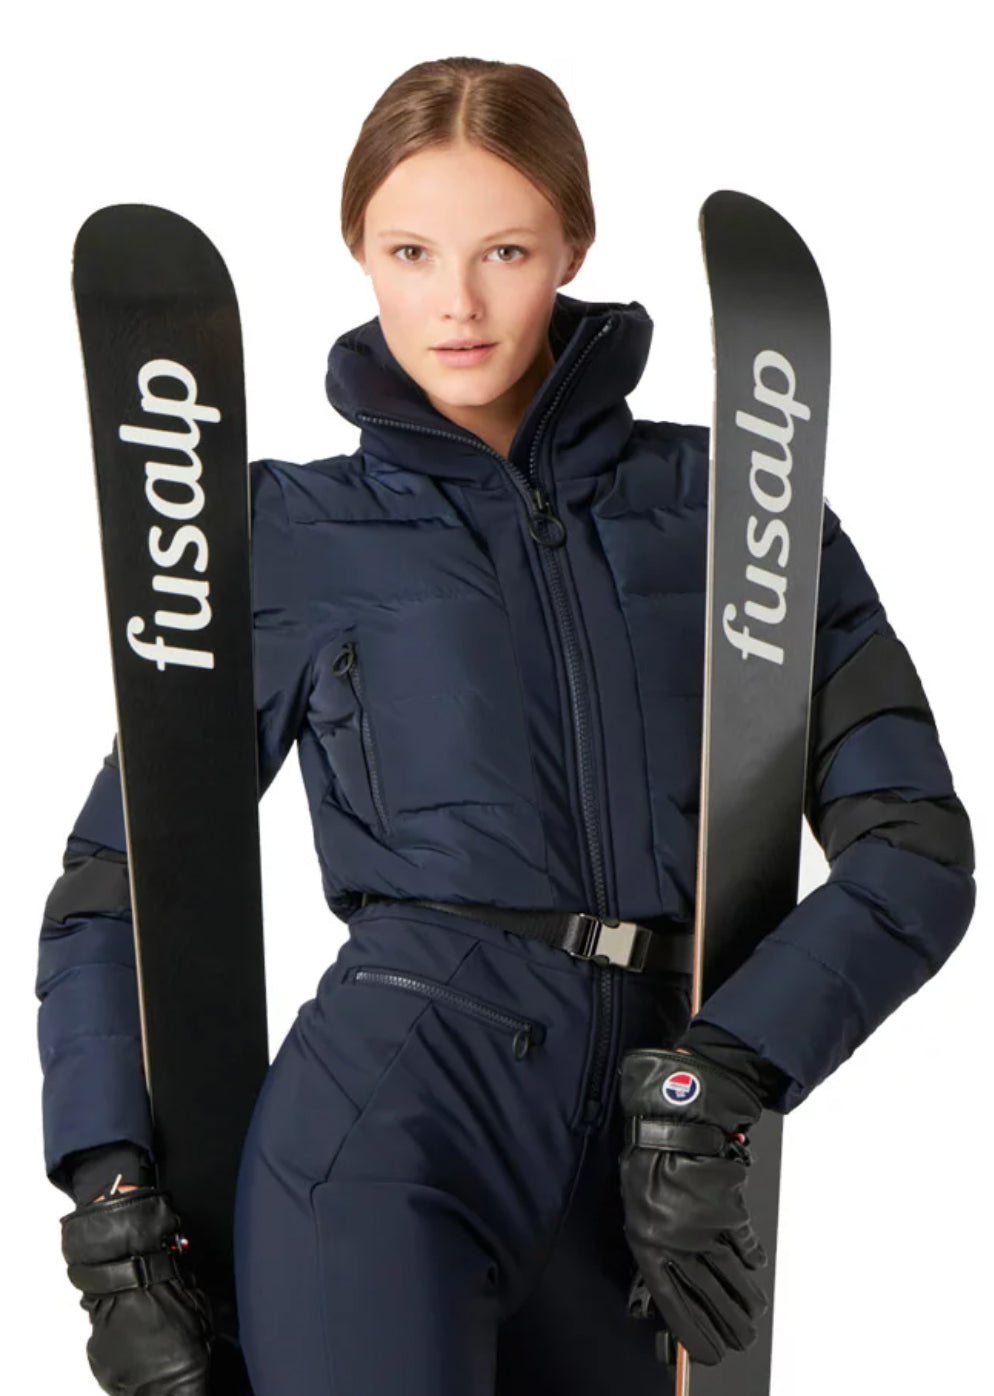 Fusalp Ski Suit Clarisse in Marin Blue